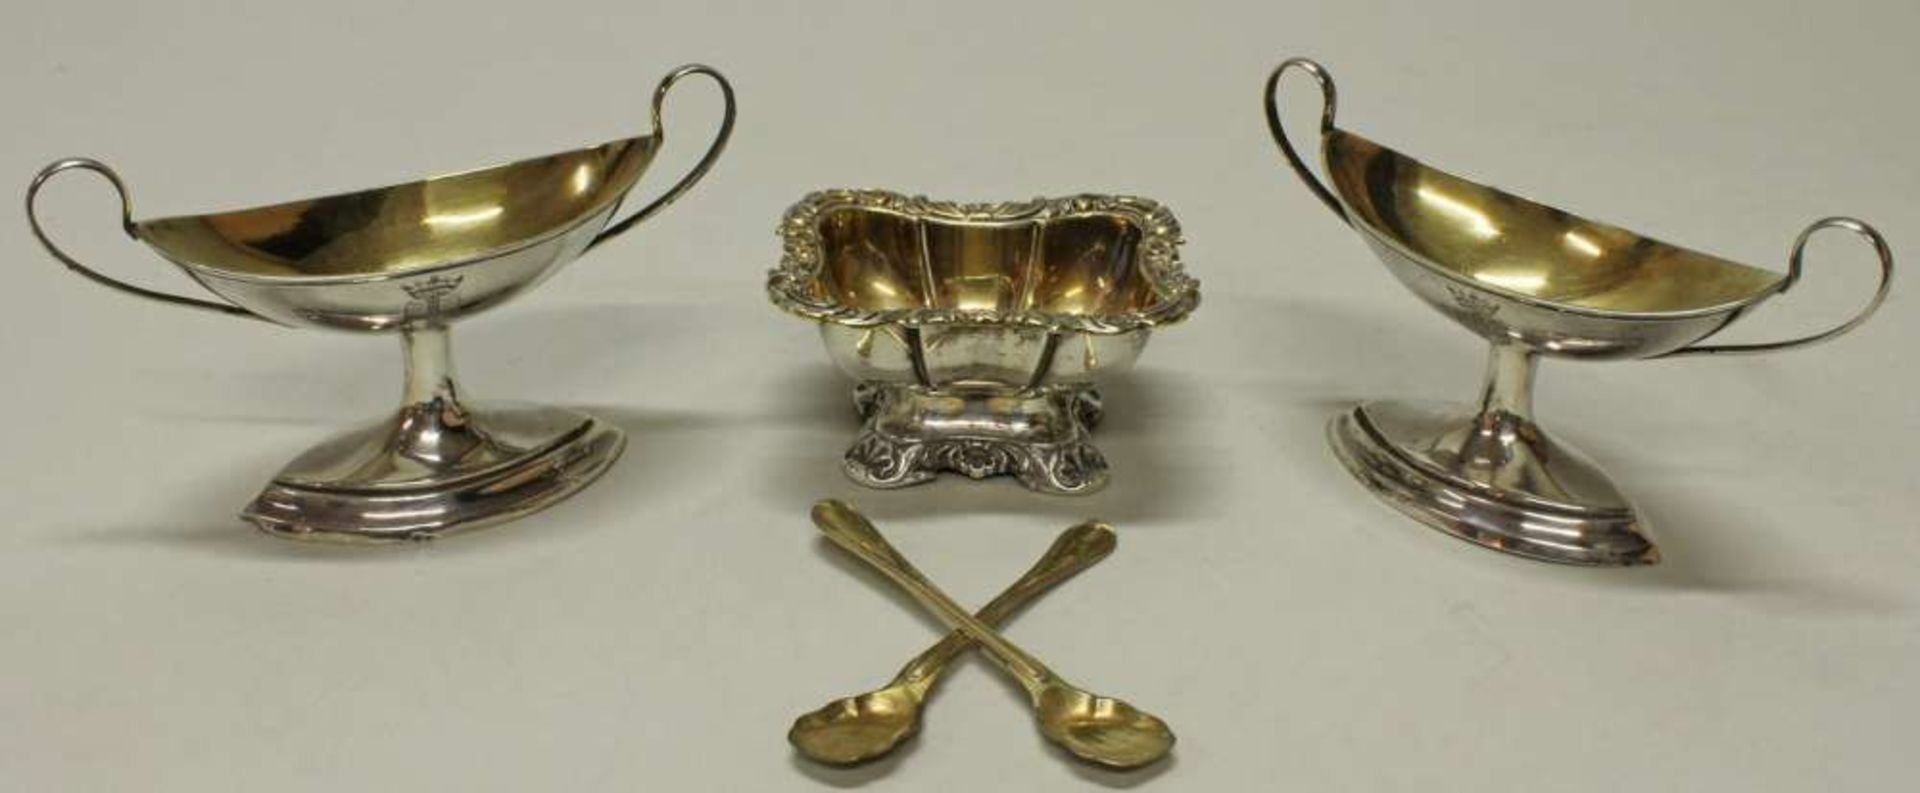 Reserve: 80 EUR        Paar Salièren und 2 Löffelchen, Silber, ungemarkt, innen vergoldet, - Image 2 of 2